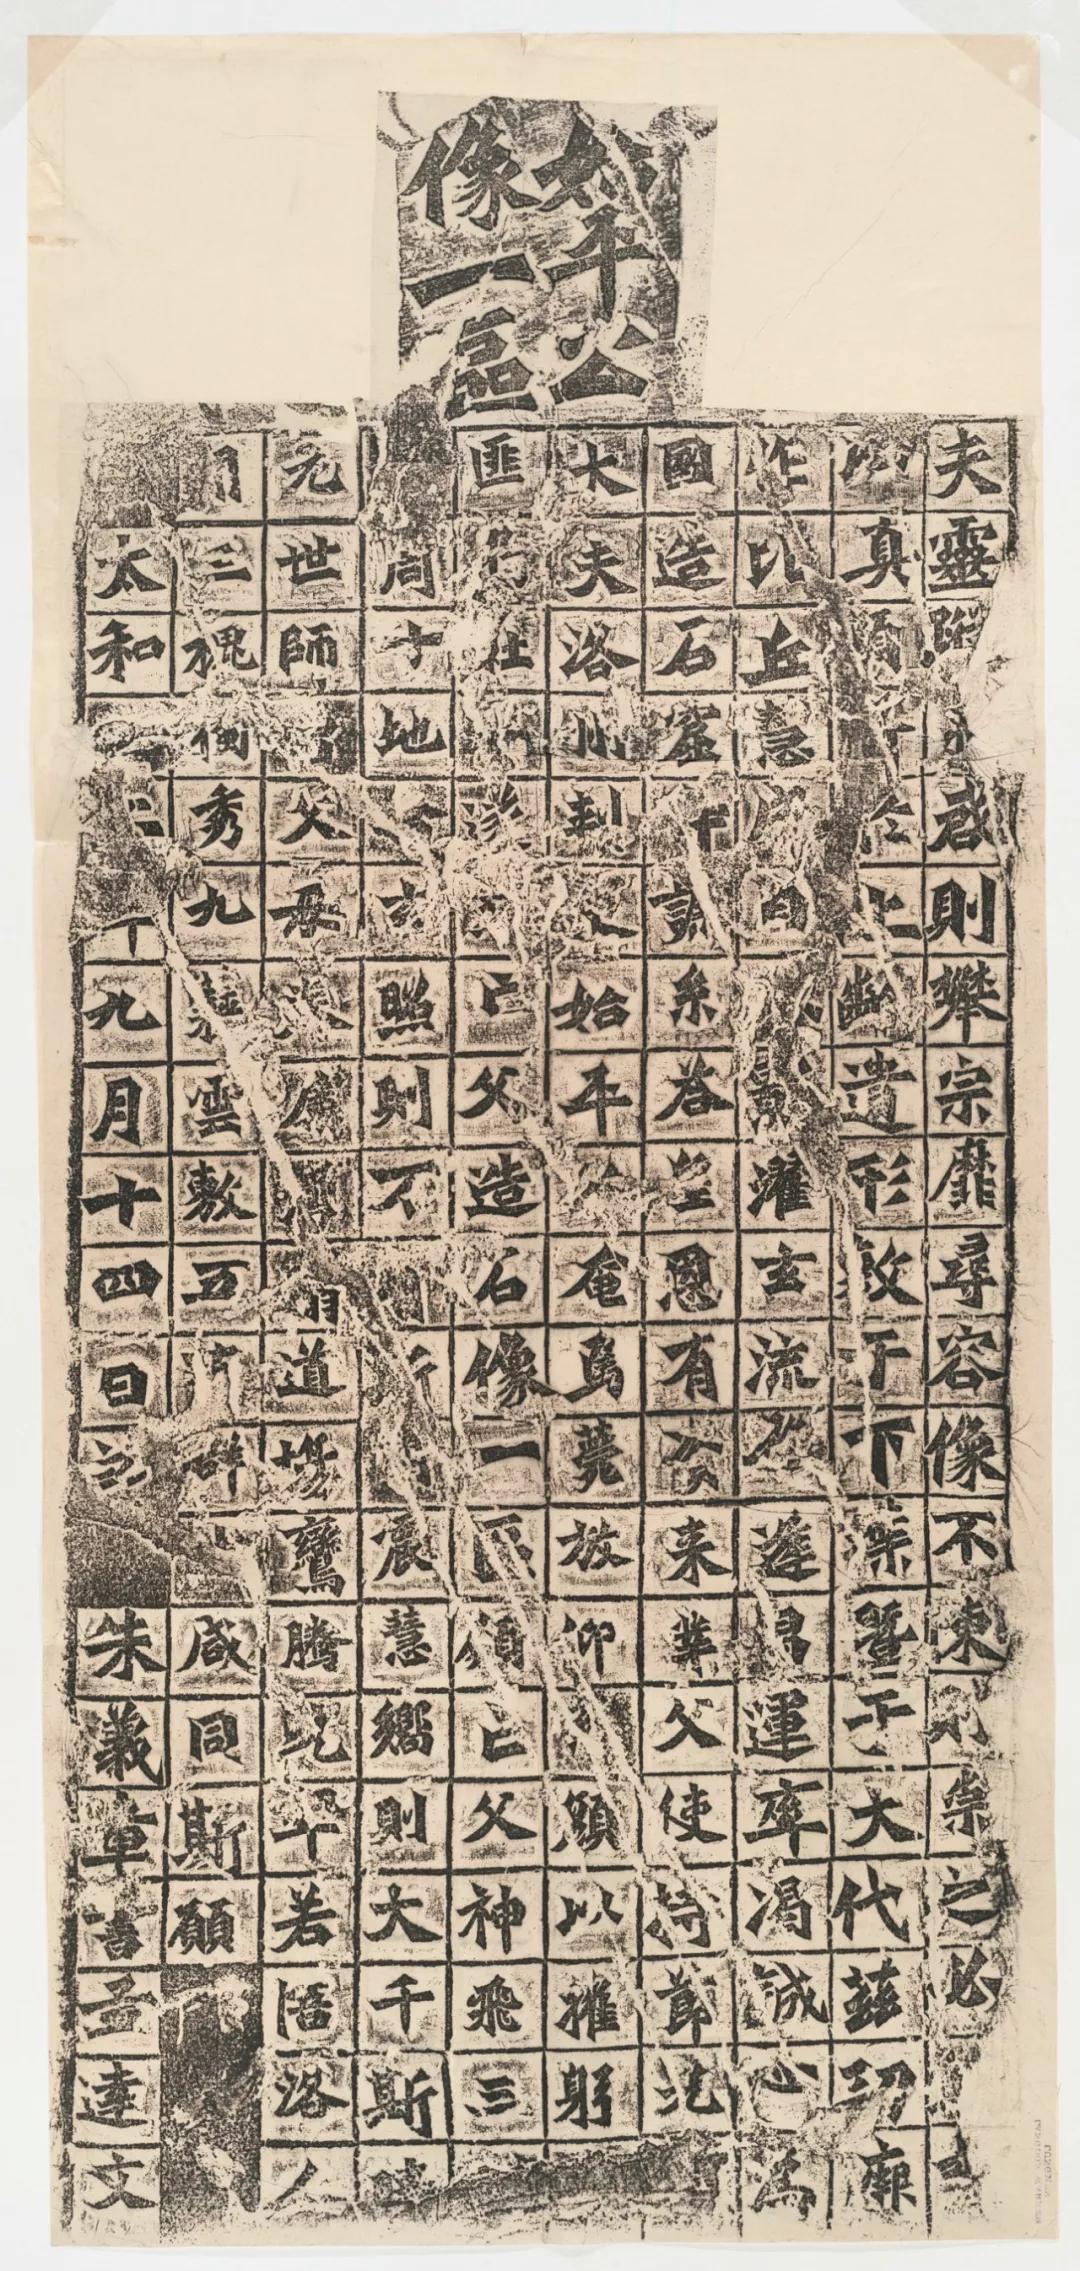 龙门二十品魏碑书法艺术的代表作品